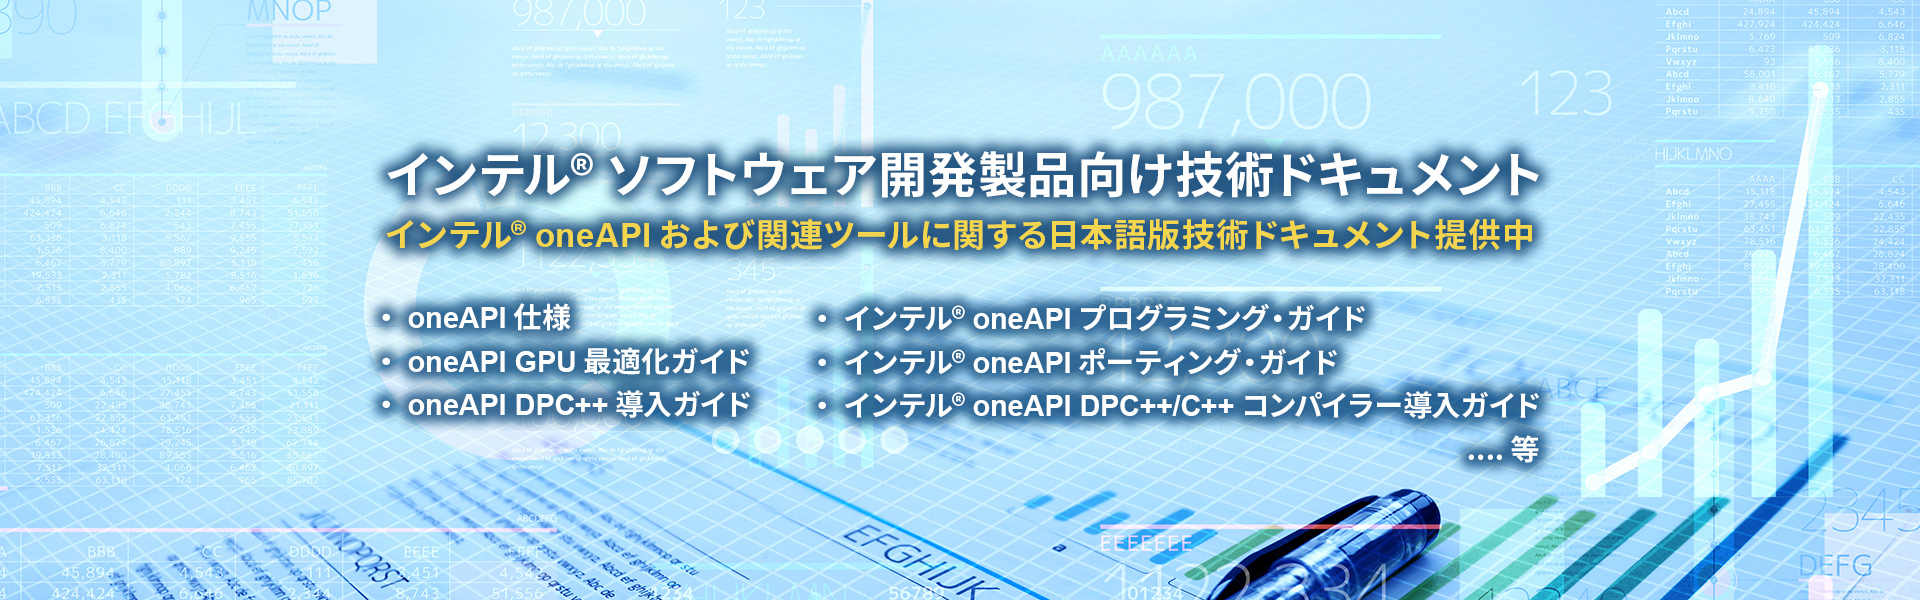 インテル・ソフトウェア開発ツールの製品カタログ、ドキュメント、参考資料等を日本語で提供中